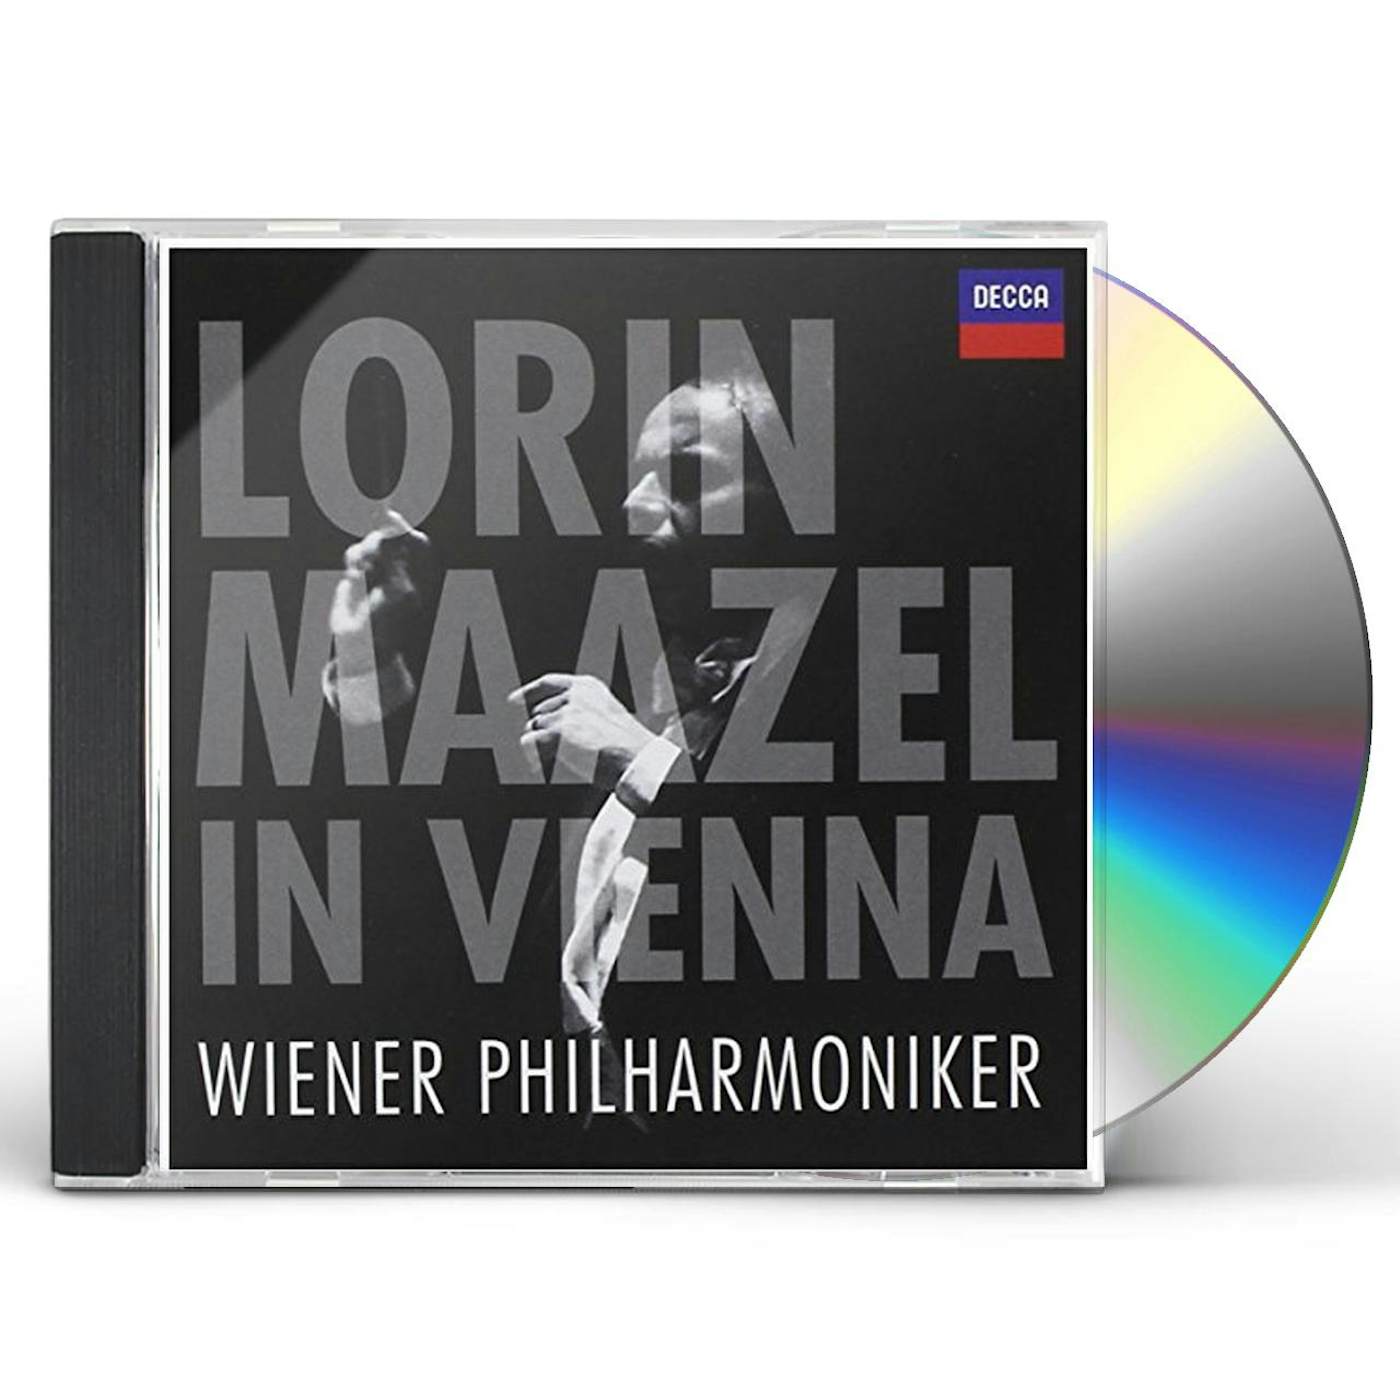 LORIN MAAZEL IN VIENNA CD